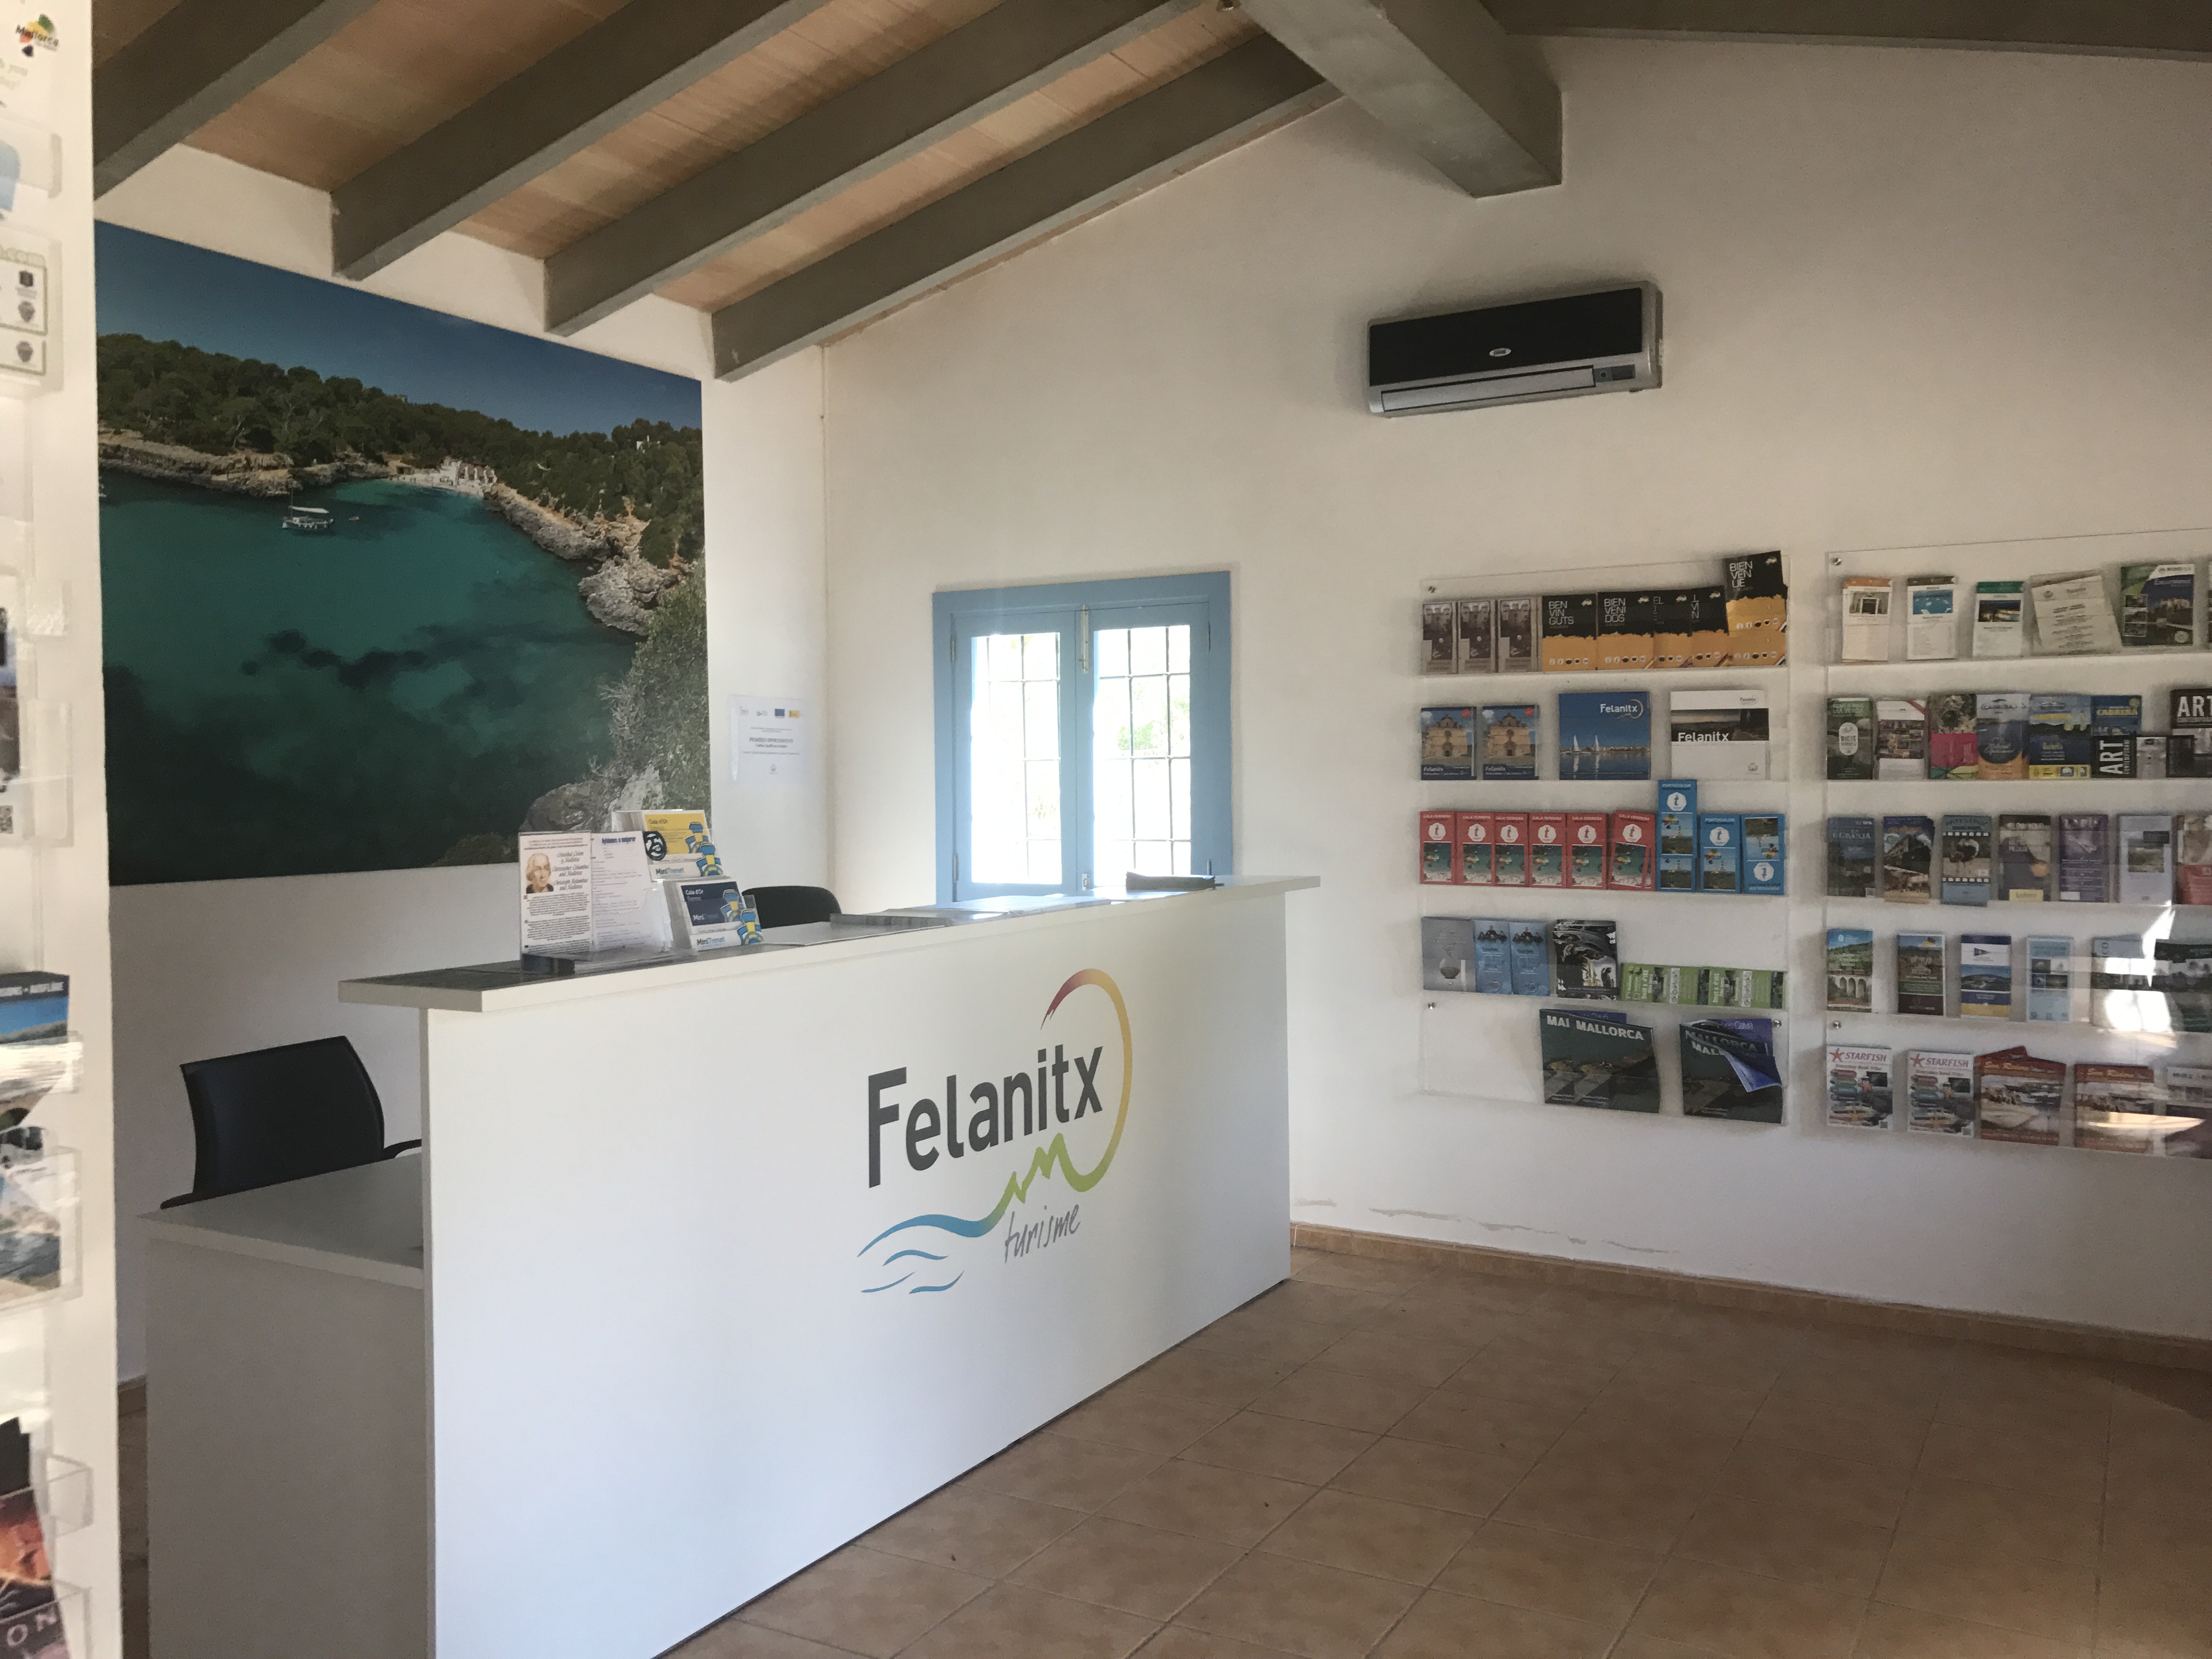 Oficina d'Informació Turística de Felanitx. Foto cedida per l'Ajuntament de Felanitx.